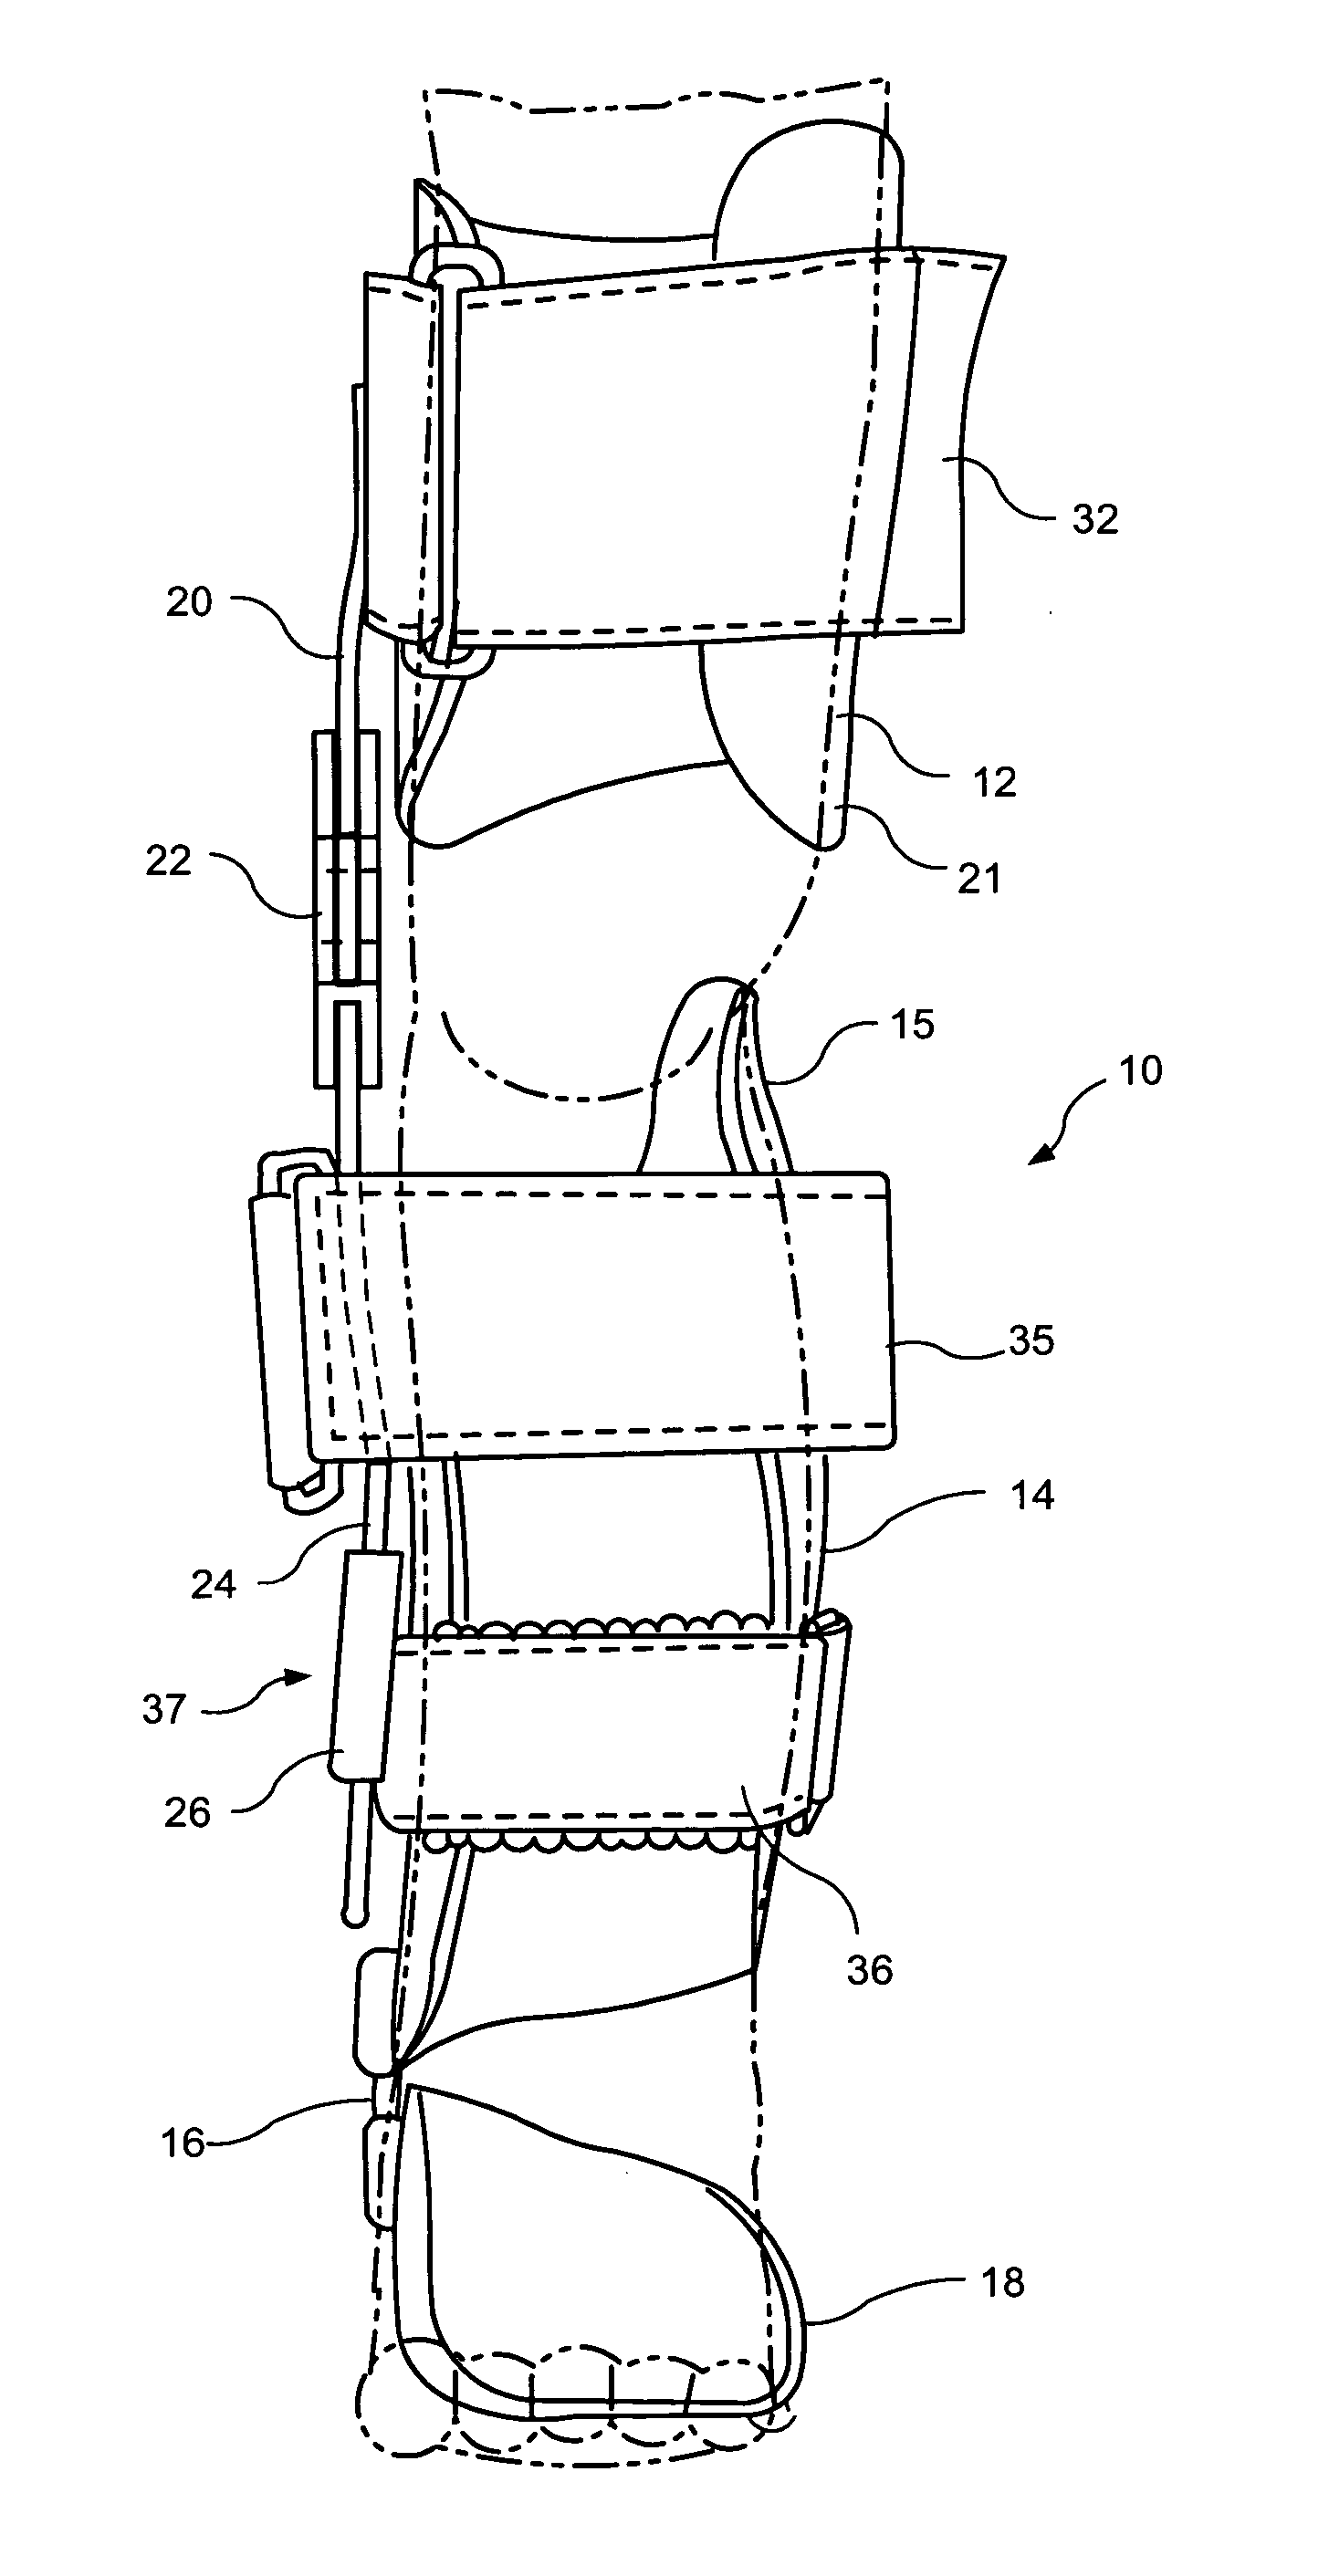 Apparatus for correction of leg deformities